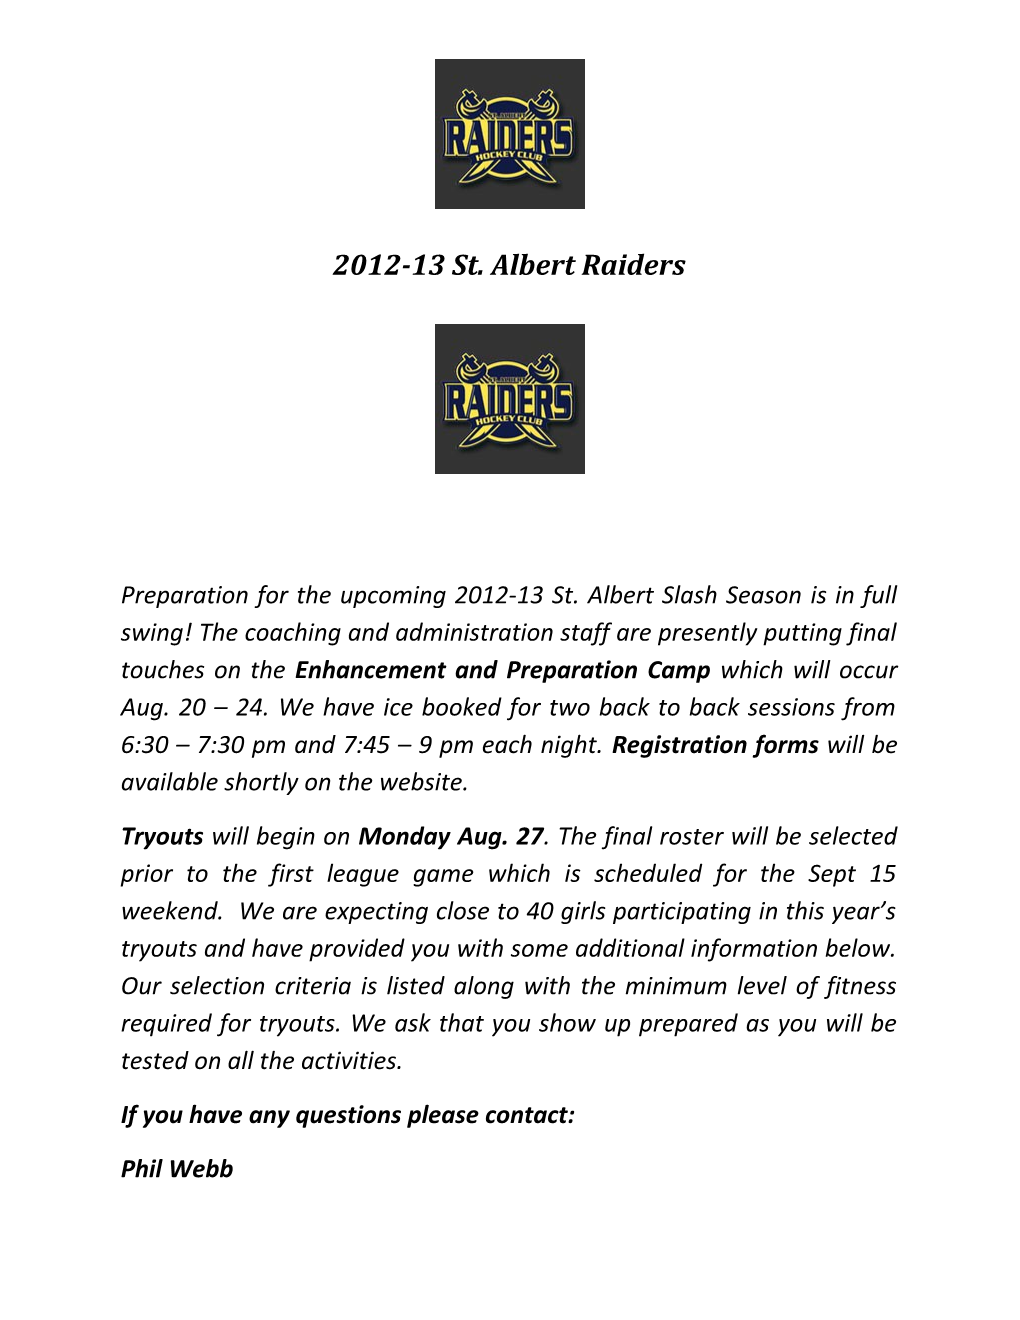 2012-13St. Albert Raiders